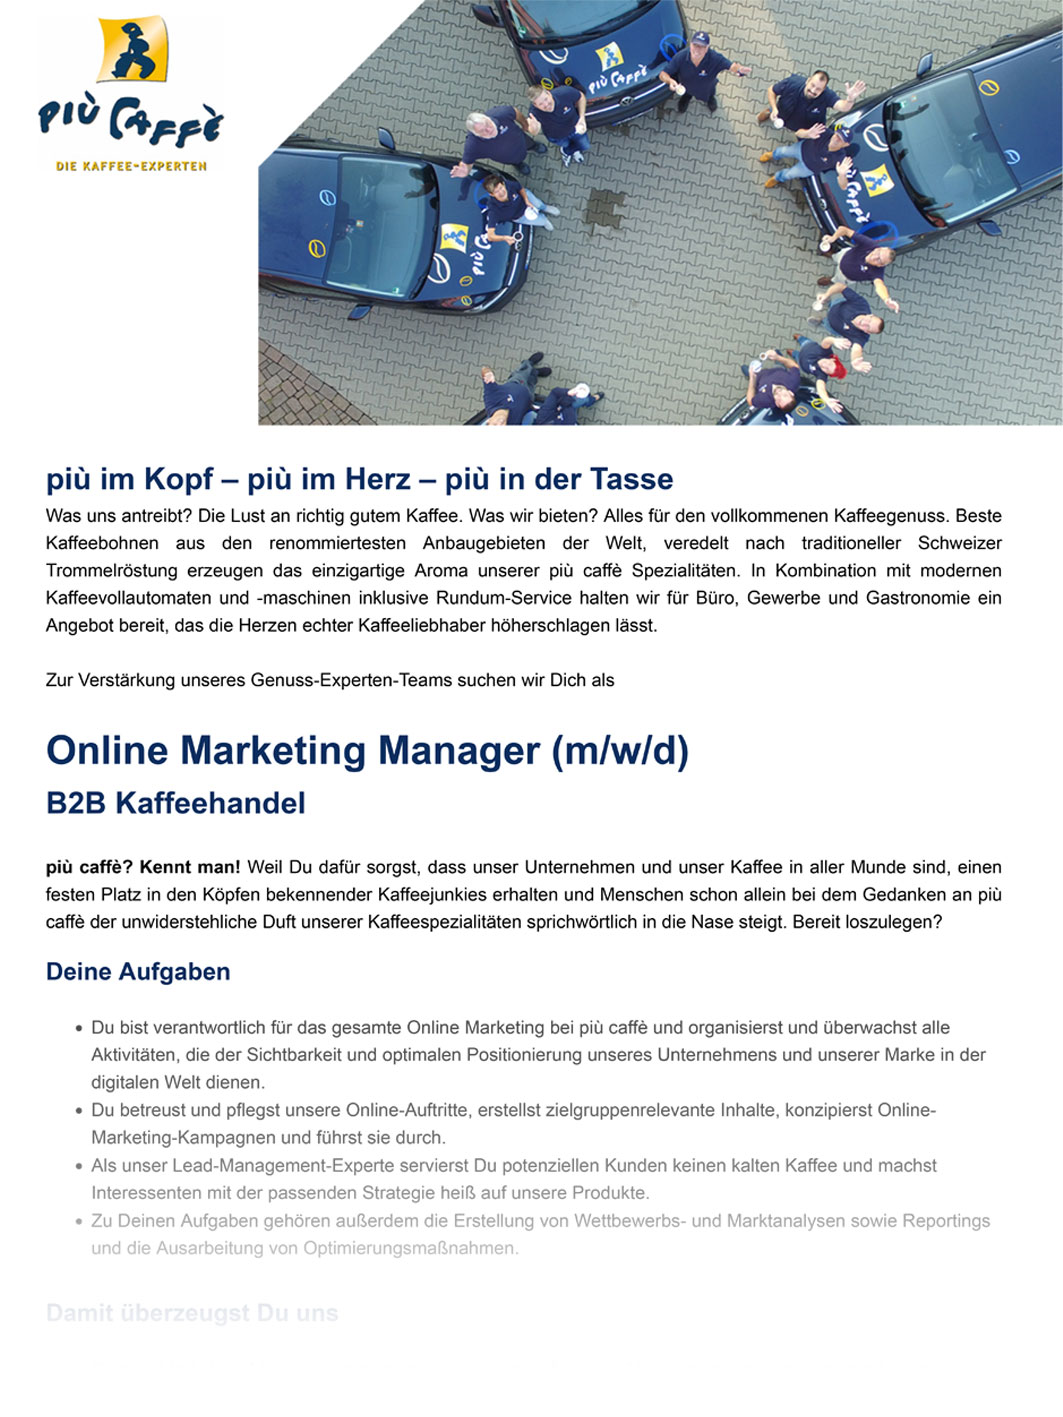 Online Marketing Manager gesucht